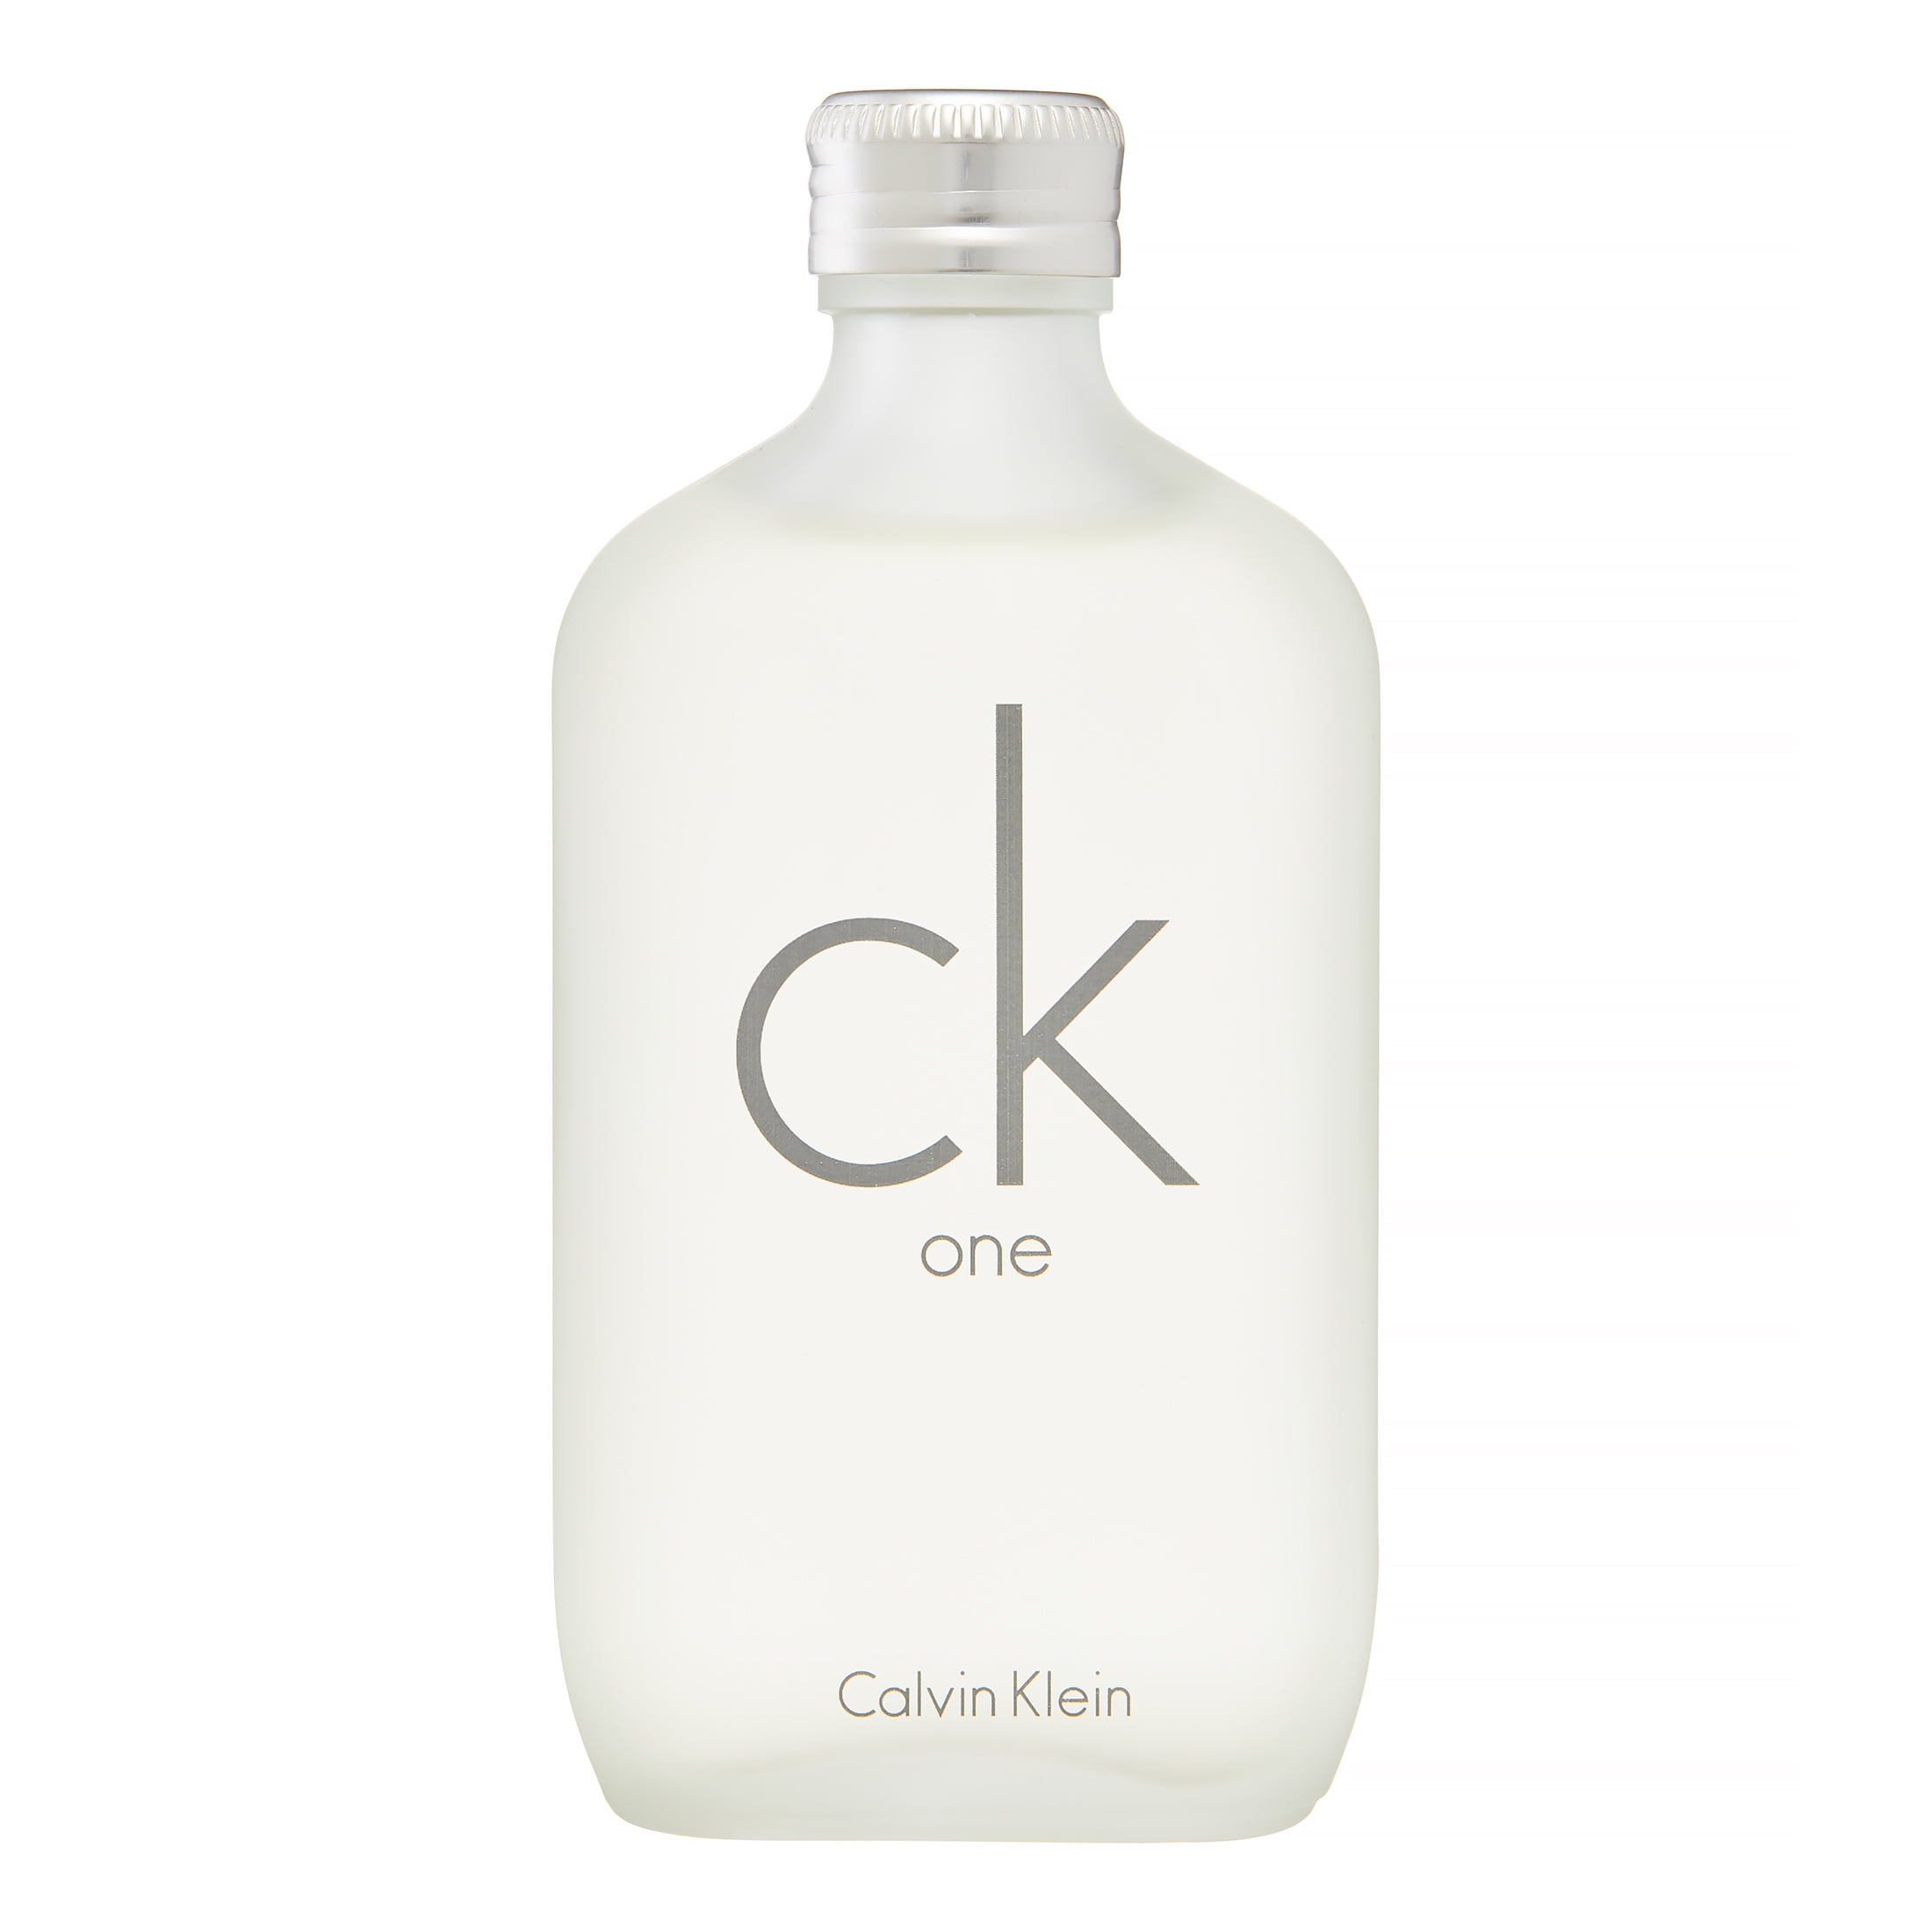 CK One by Calvin Klein for Unisex - 3.3 oz EDT Spray, 3.3oz - Ralphs